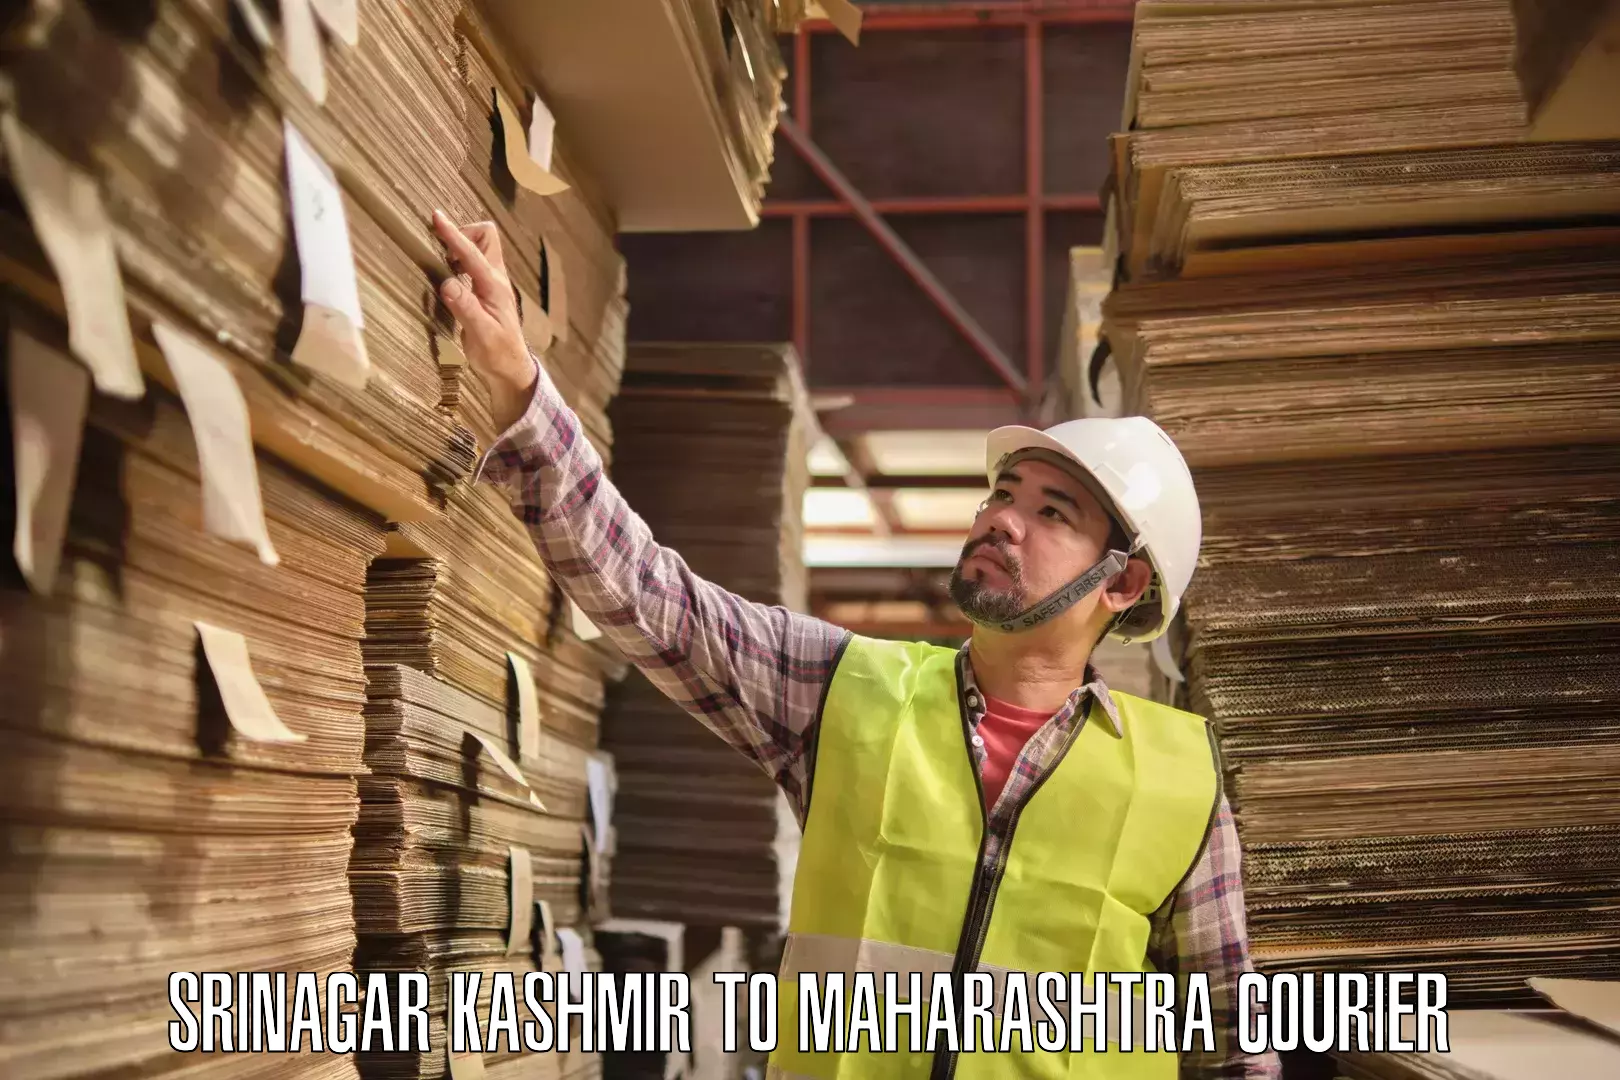 Courier service partnerships Srinagar Kashmir to Masrul